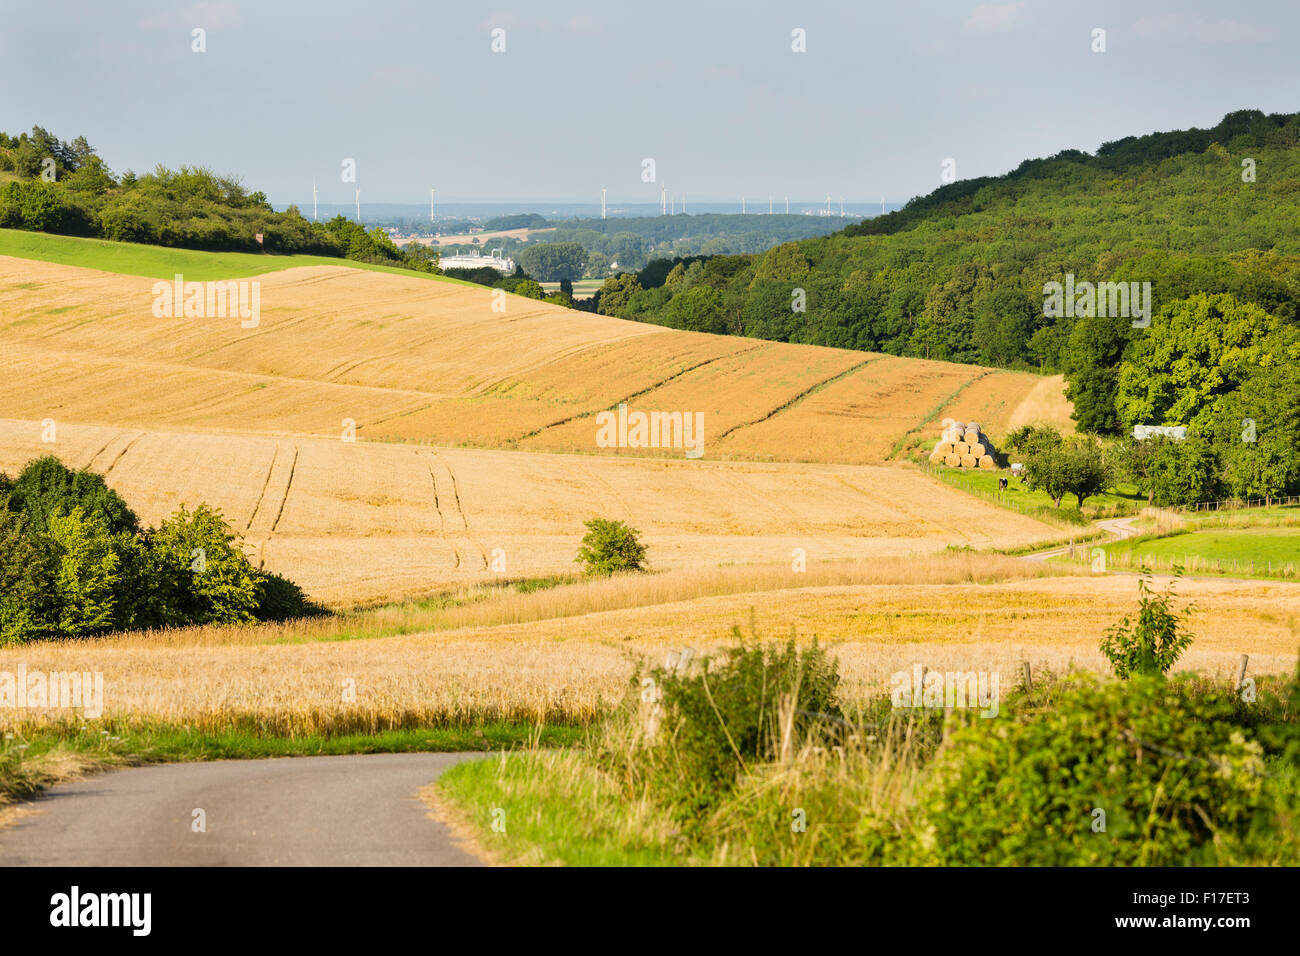 Una strada che conduce al golden campi di segale in bella luce sulle colline a nord di Eifel paesaggio in Germania con alcune mucche in v Foto Stock